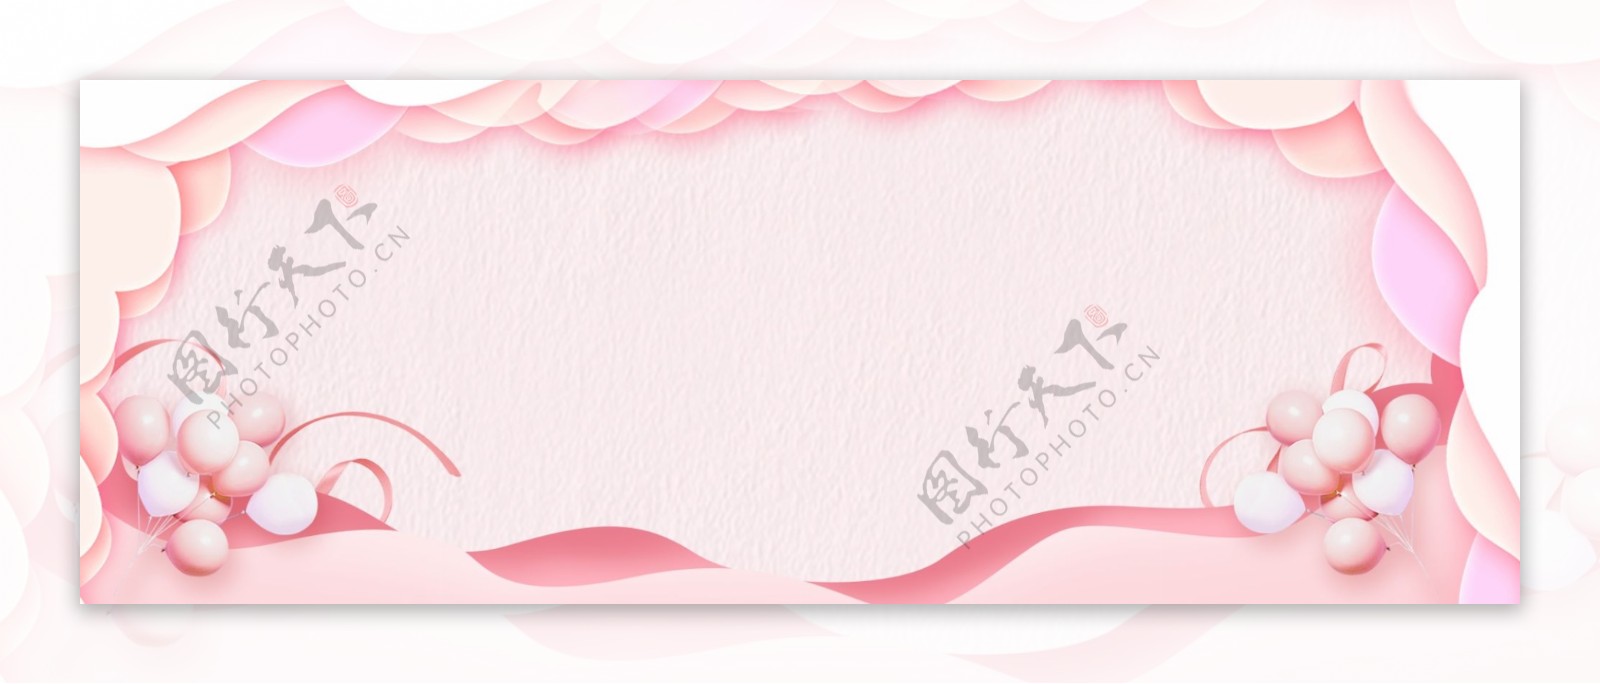 简约粉色折纸风女王节妇女节节日背景